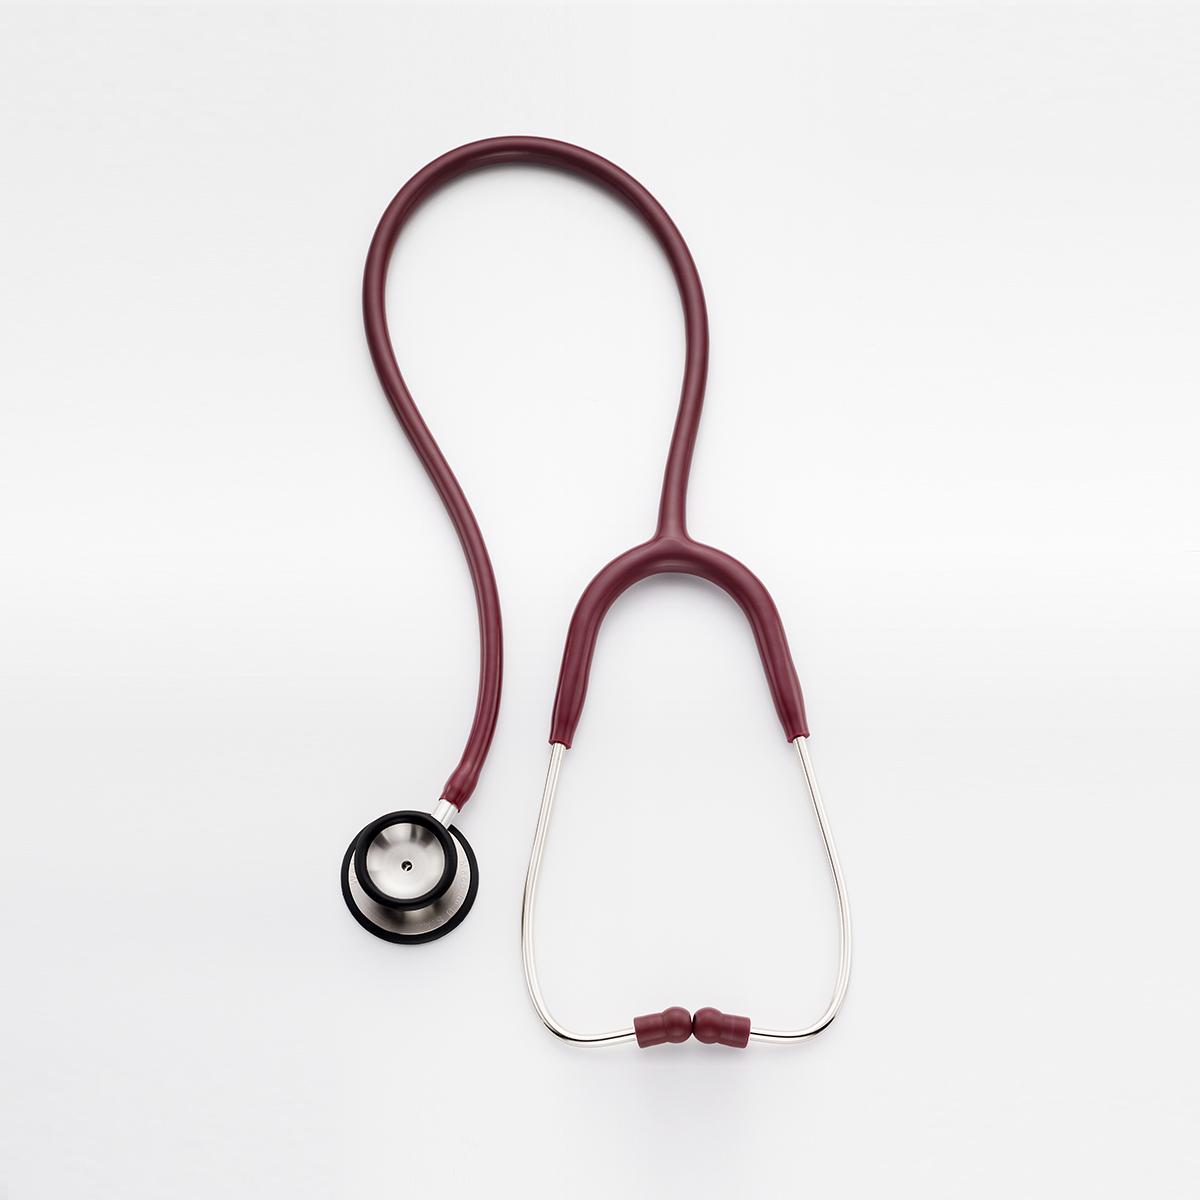 Stetoscopio professionale per adulti, vista dall'alto, colore bordeaux